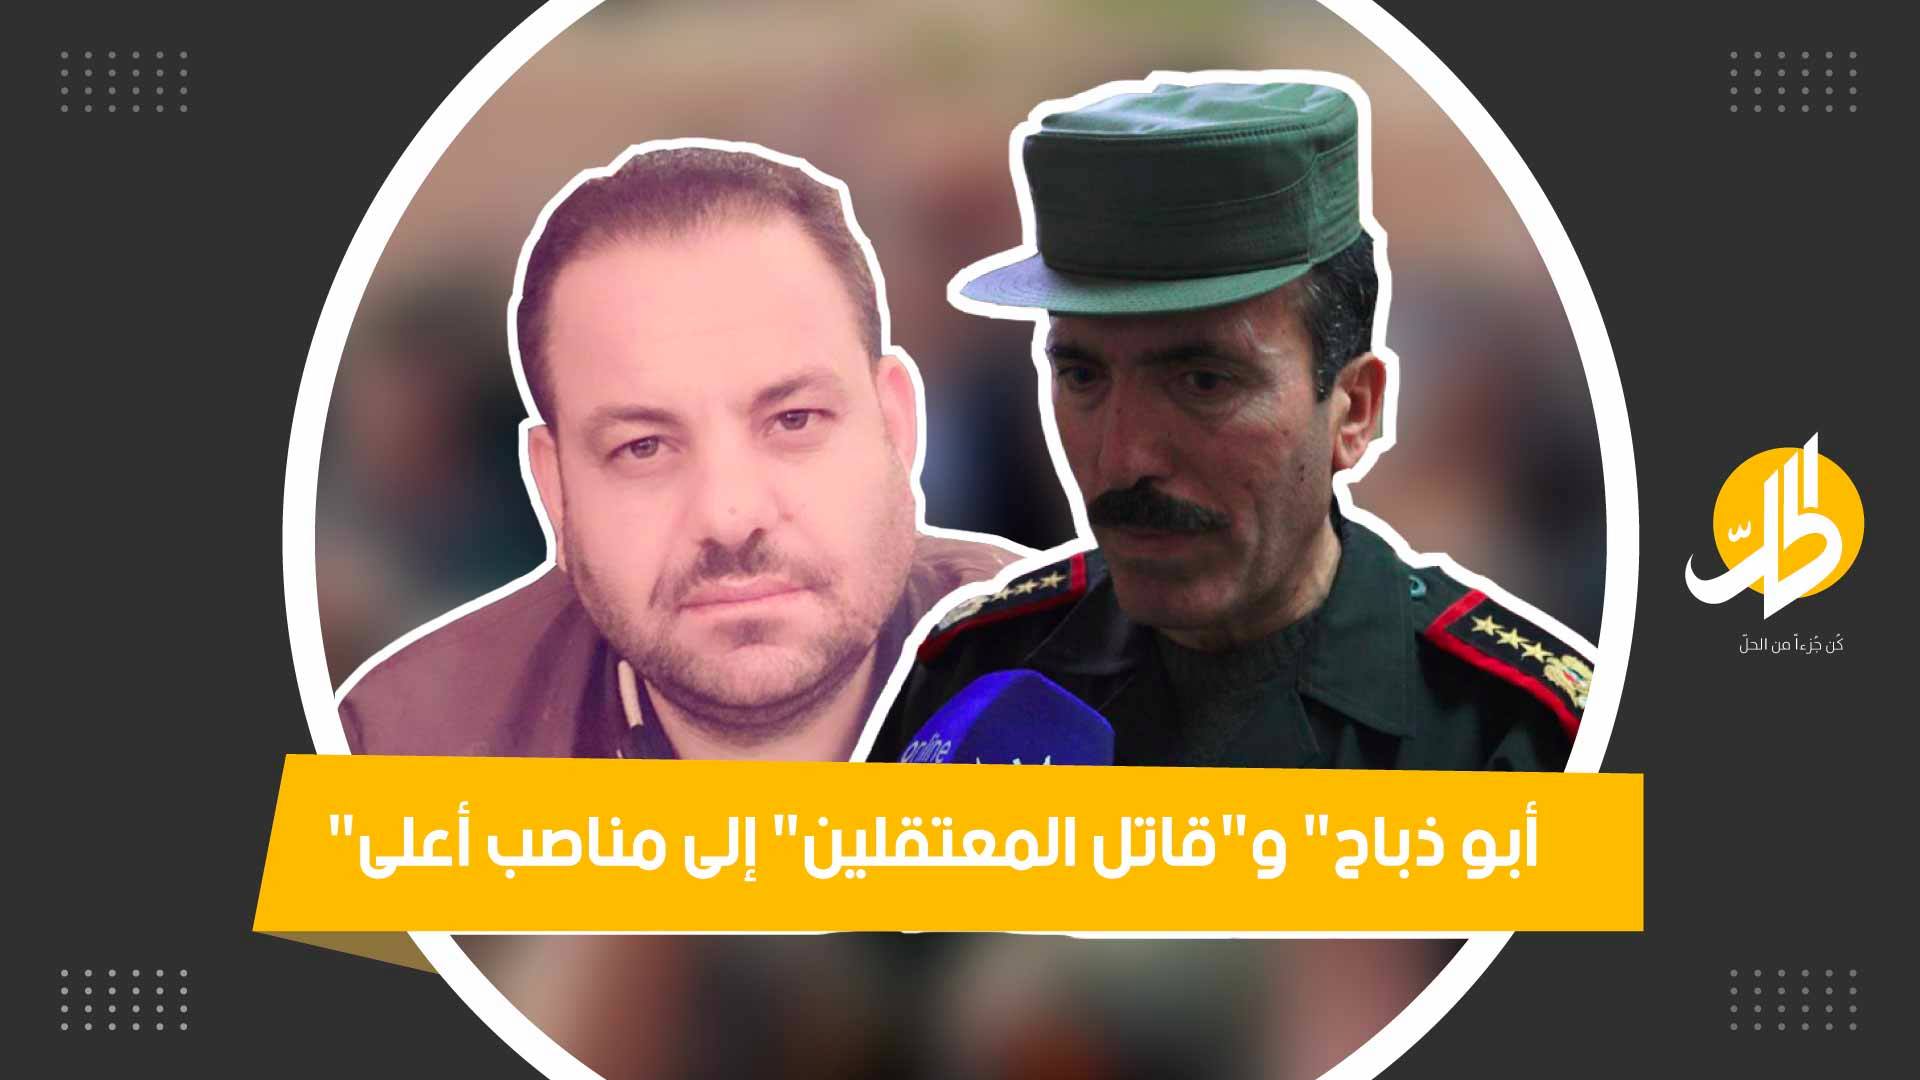 “أبو ذباح أصبح مديراً لنادي رياضي.. ومناصب لـ “مجرمين” آخرين